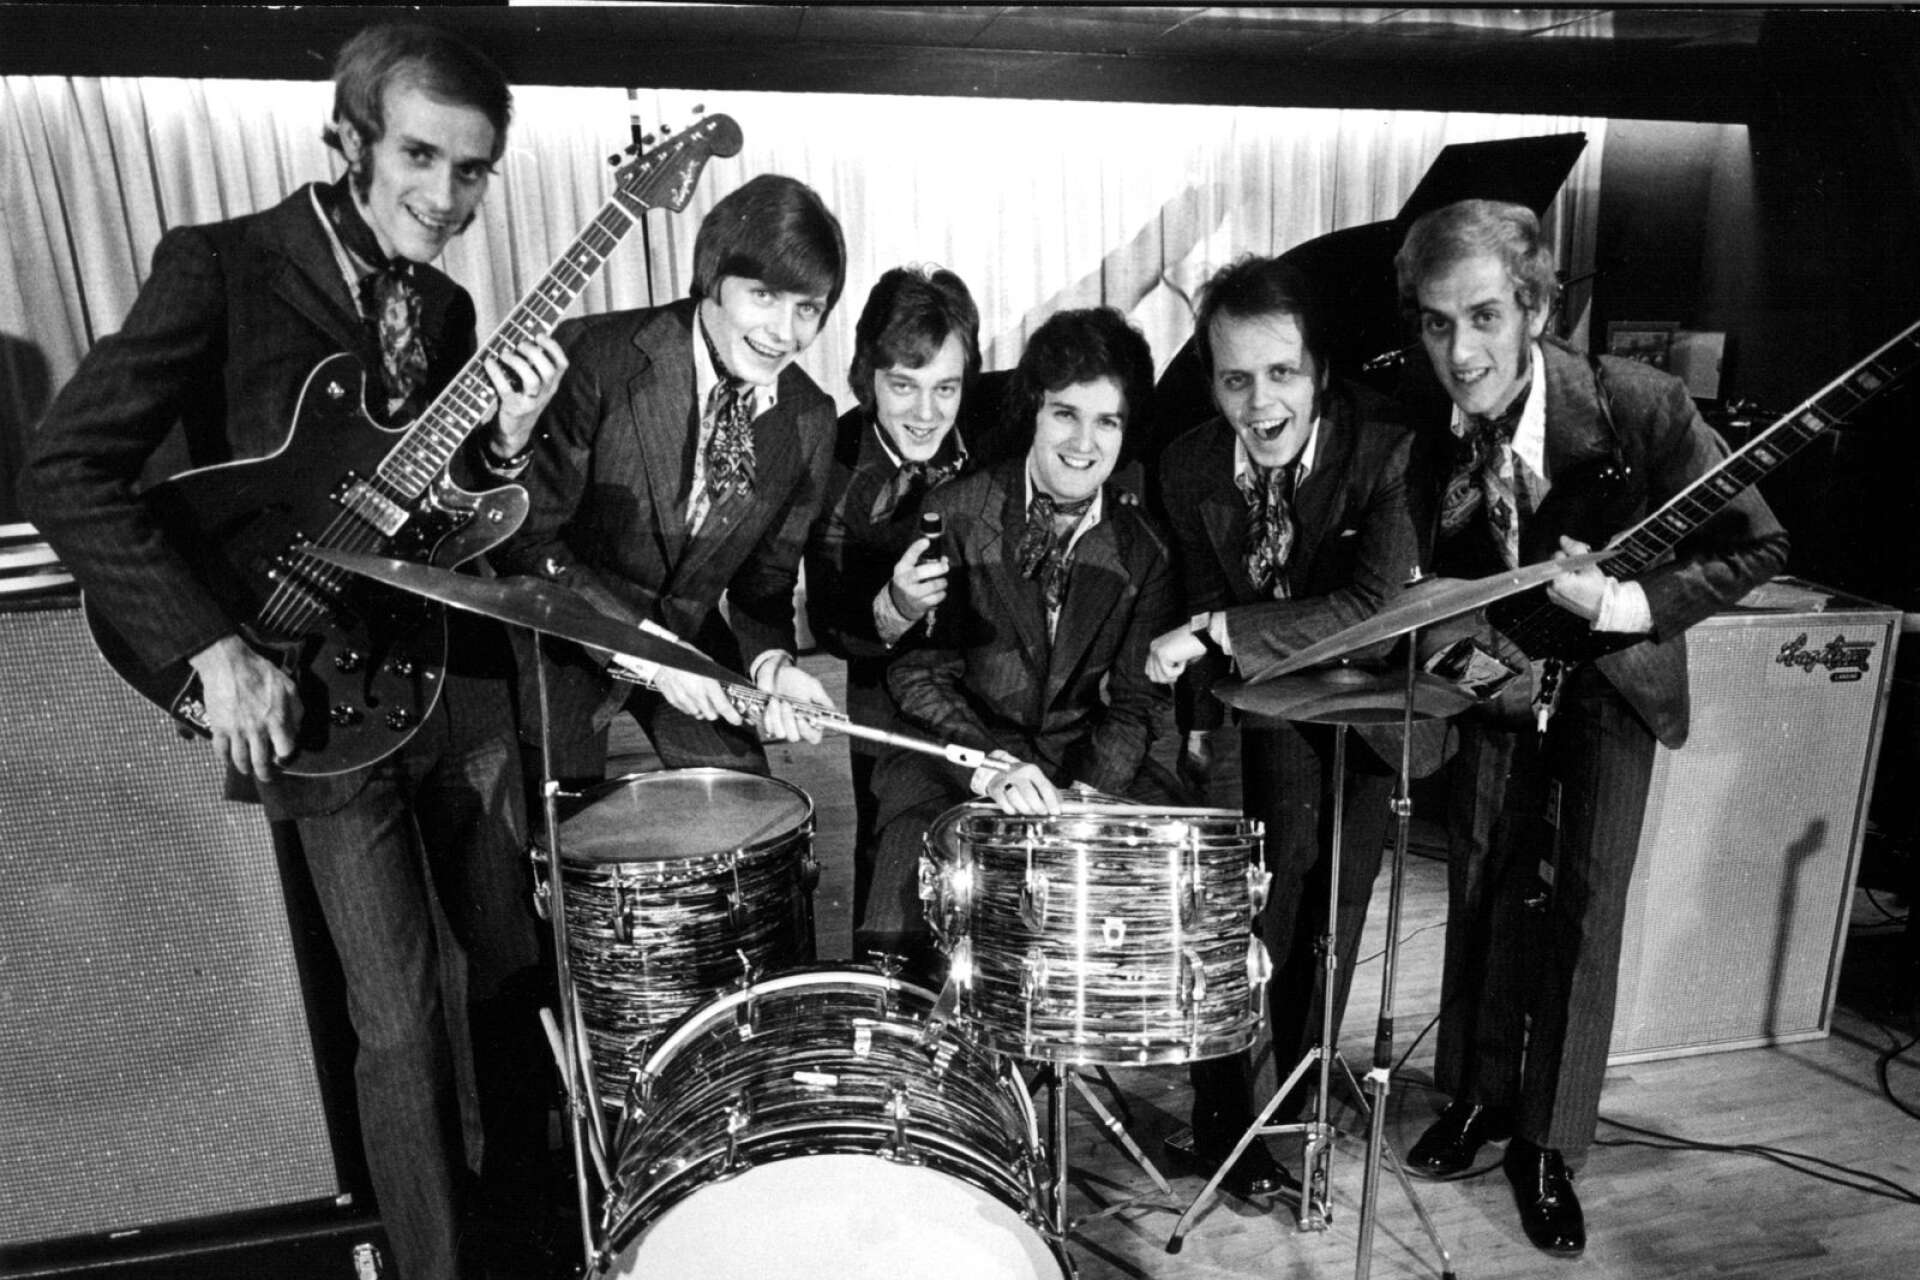 Streaplers modell 1972. Bandet bildades i Kungälv 1959 av Lasse Larsson och bröderna Göran och Håkan Liljeblad.